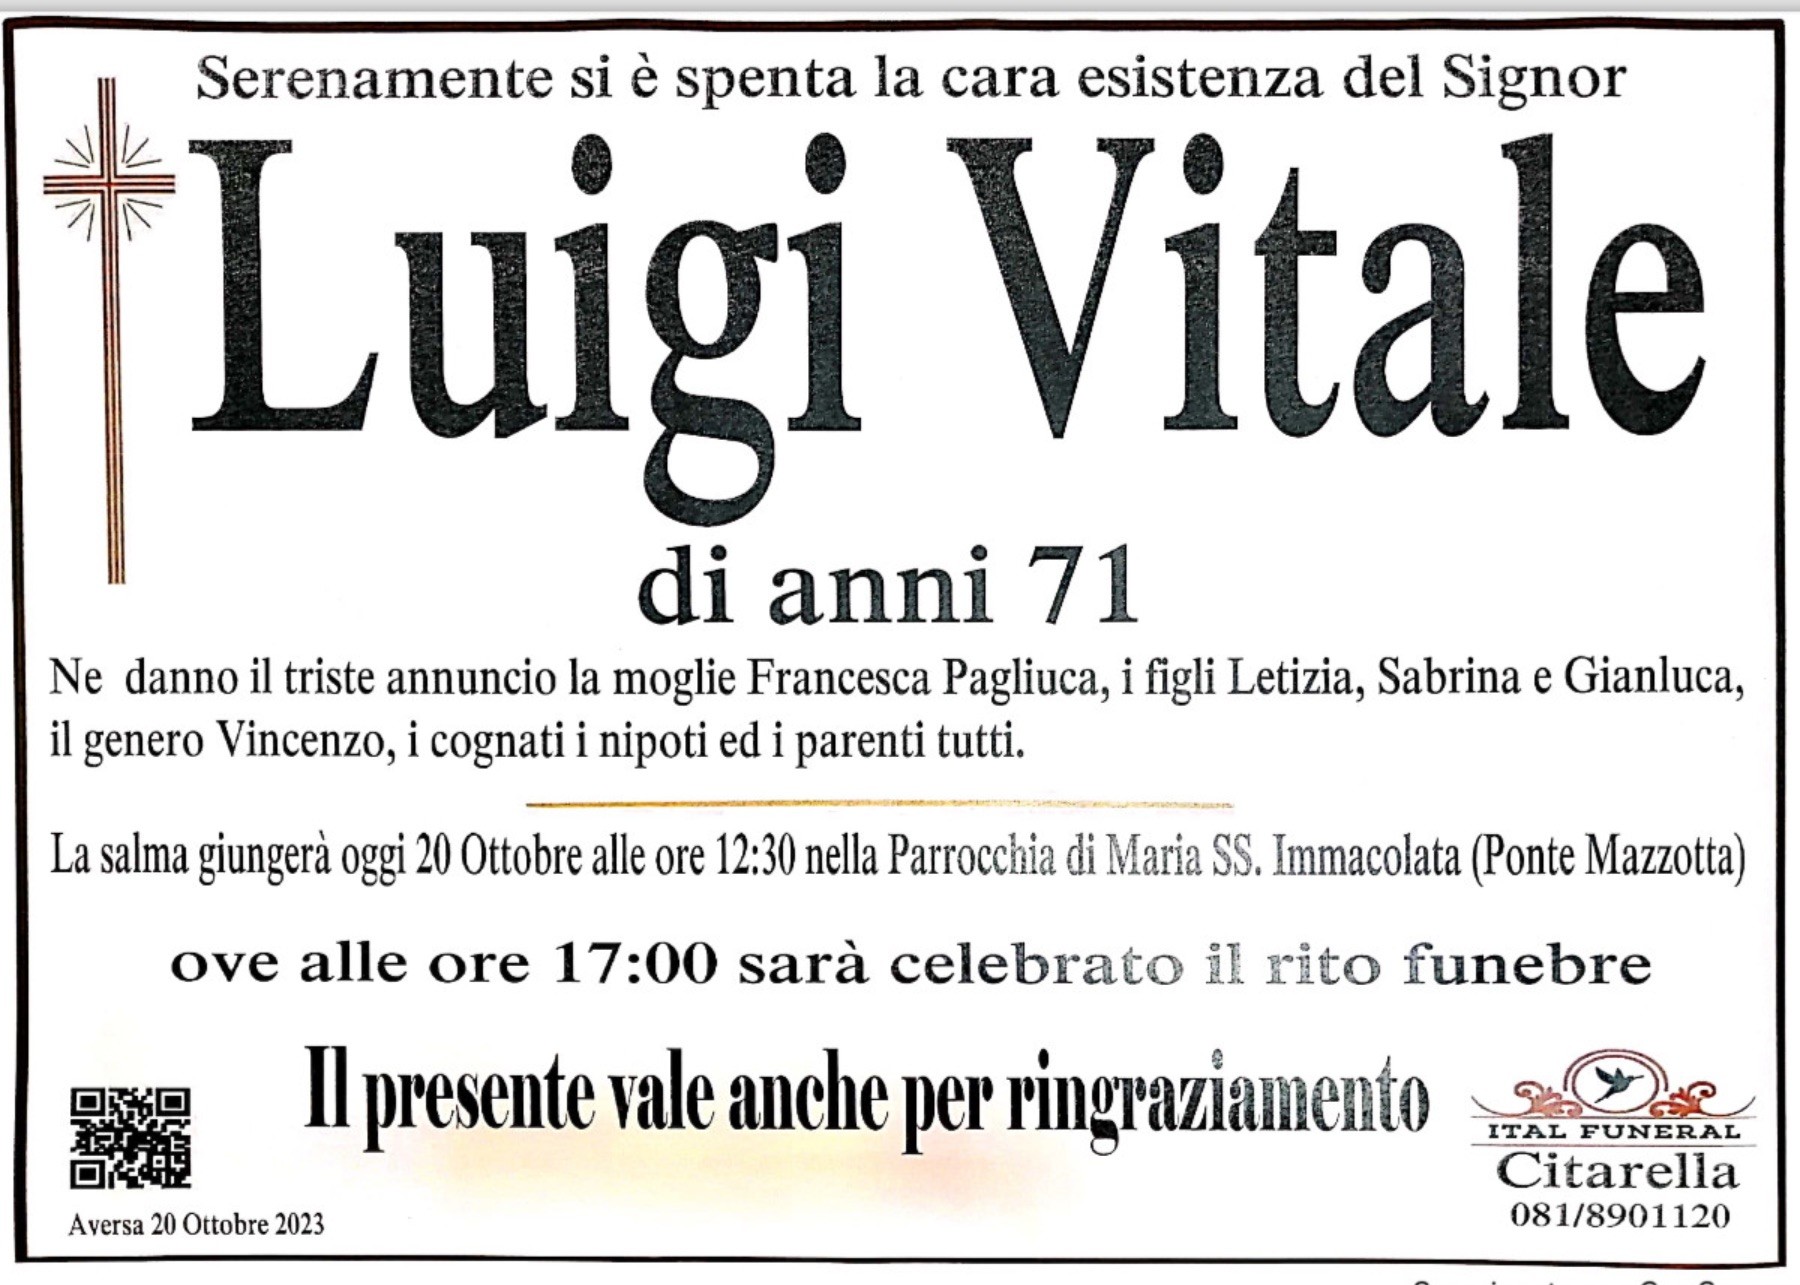 Luigi Vitale